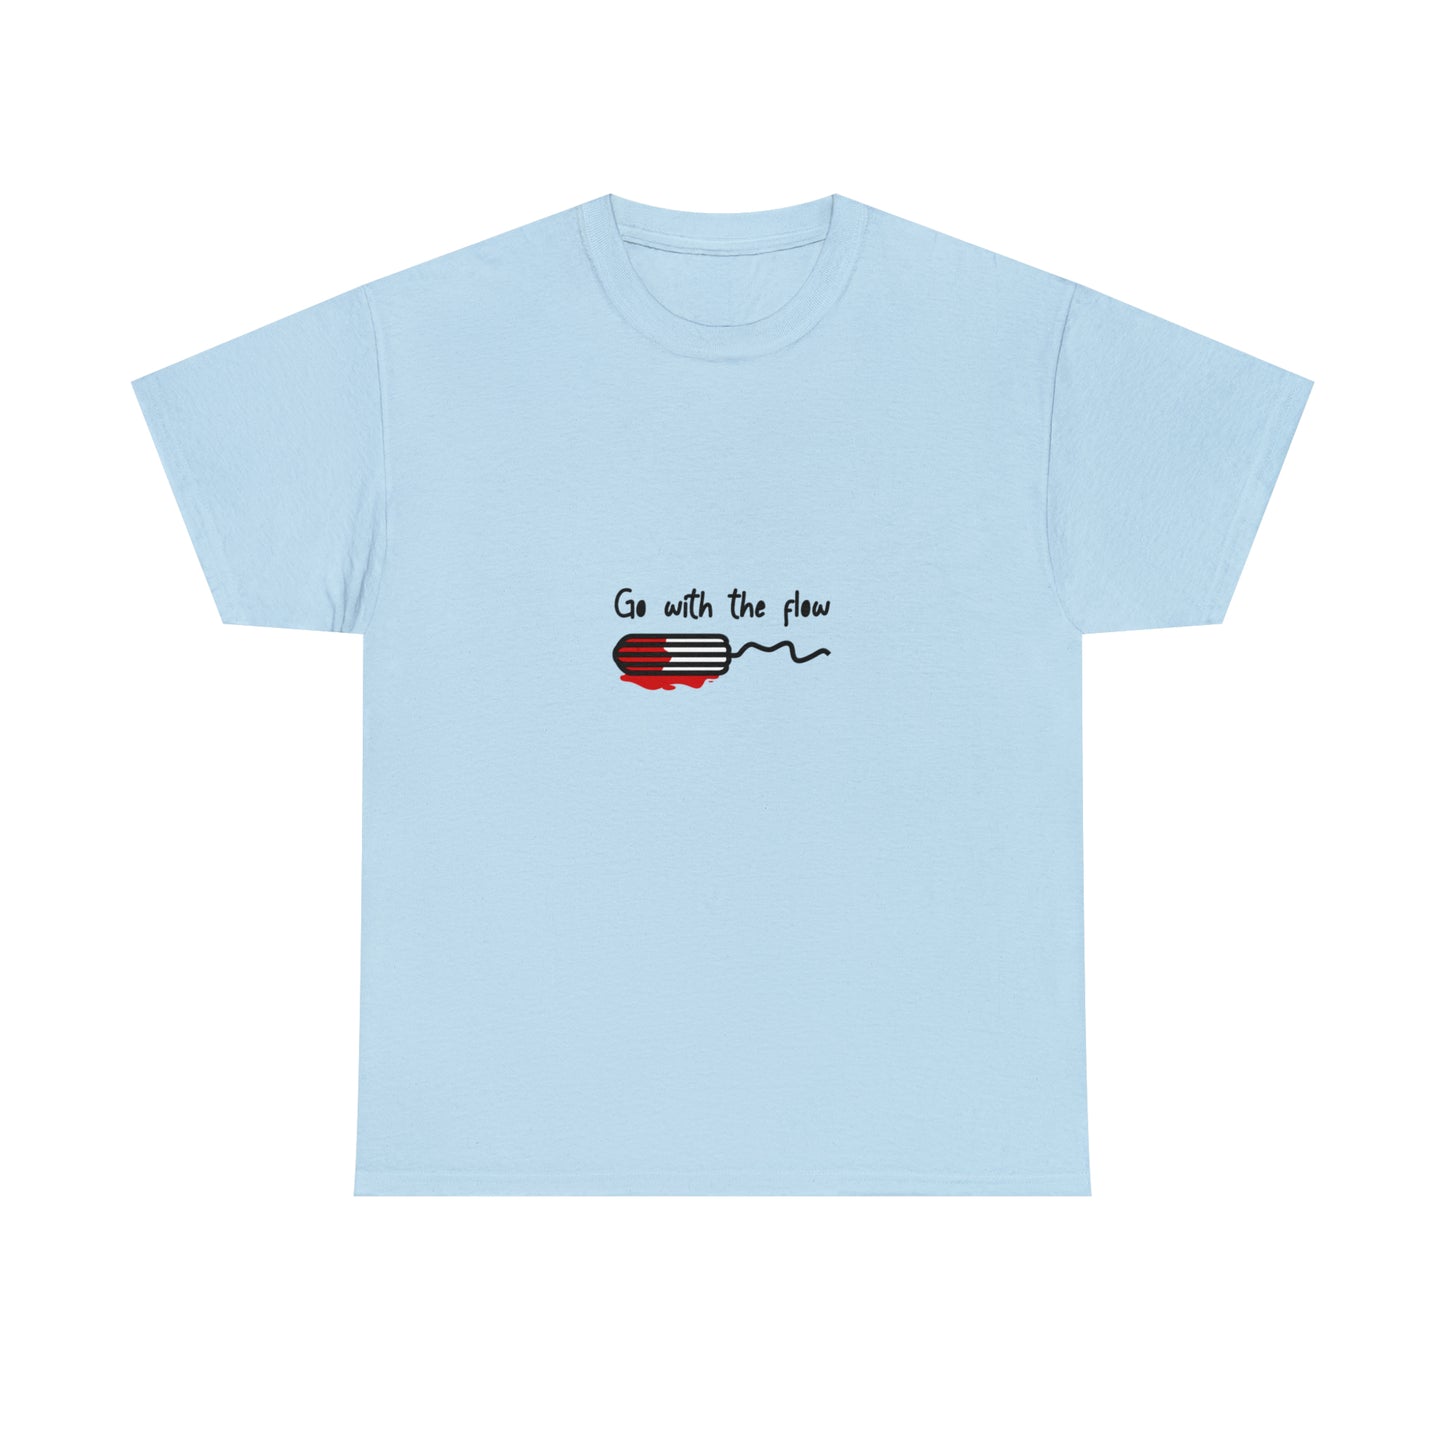 Custom Parody T-shirt, Go with the flow design